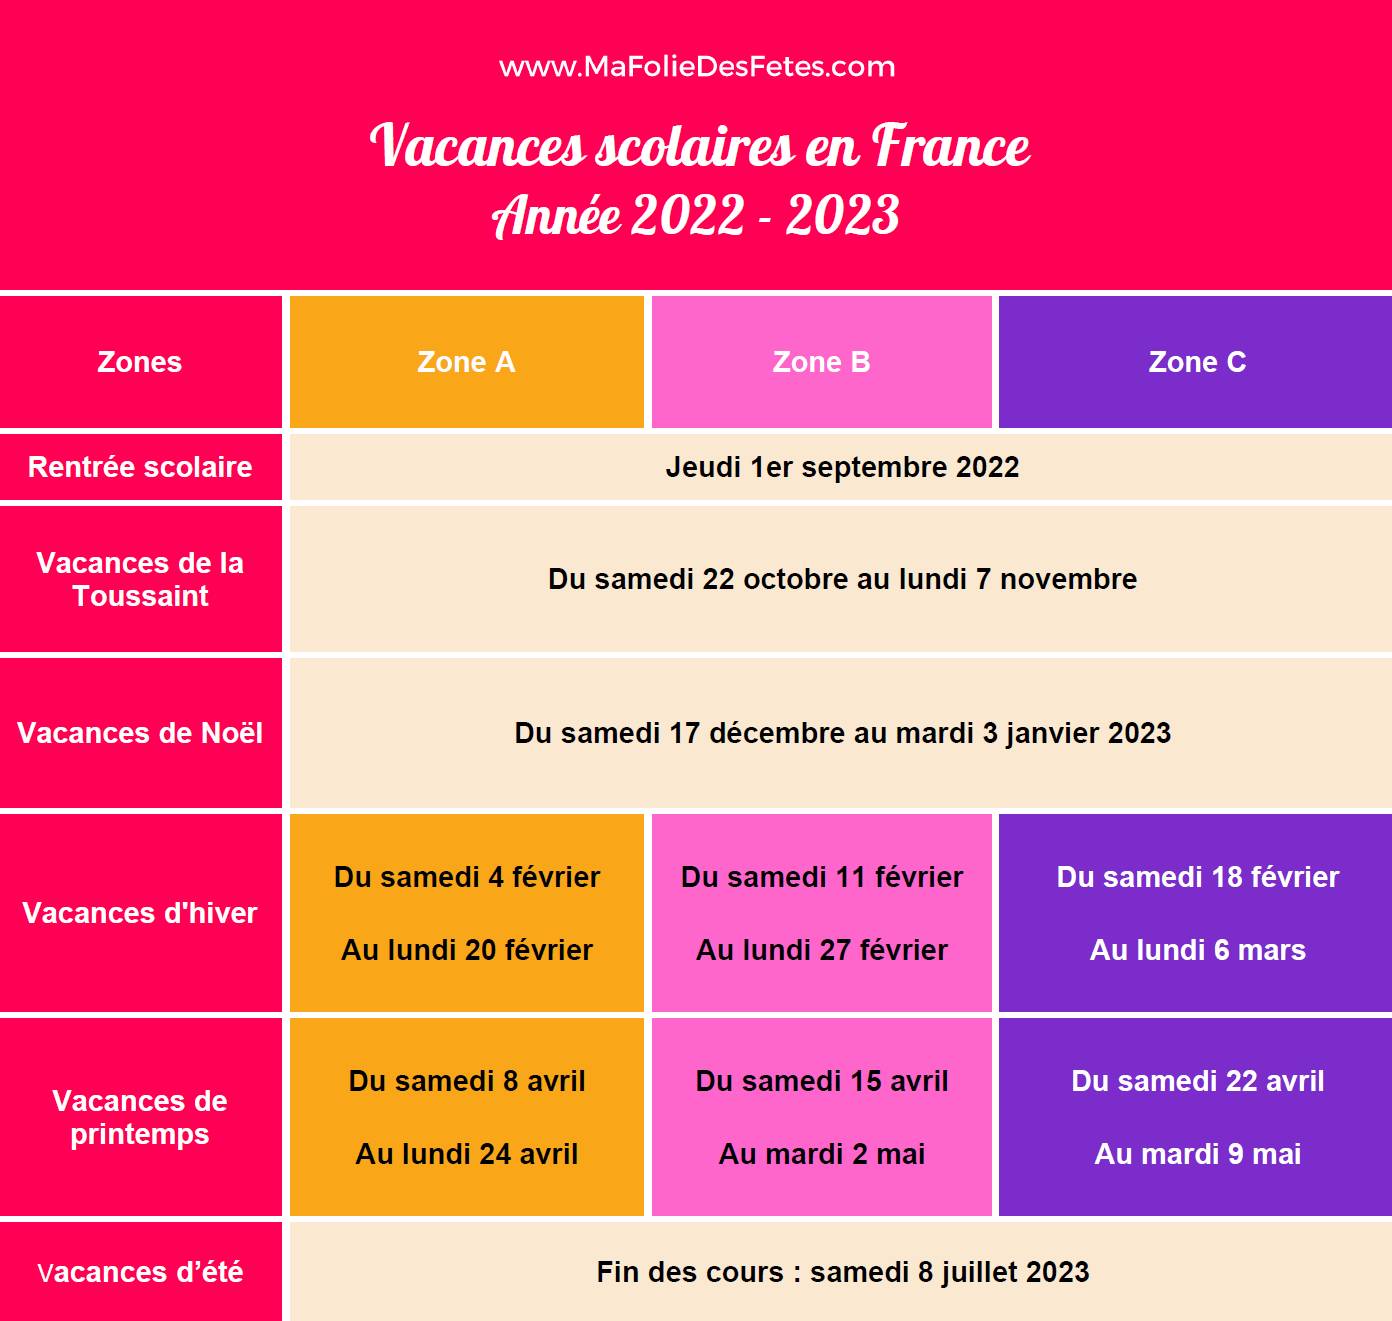 Vacances scolaires 2022-2023 France